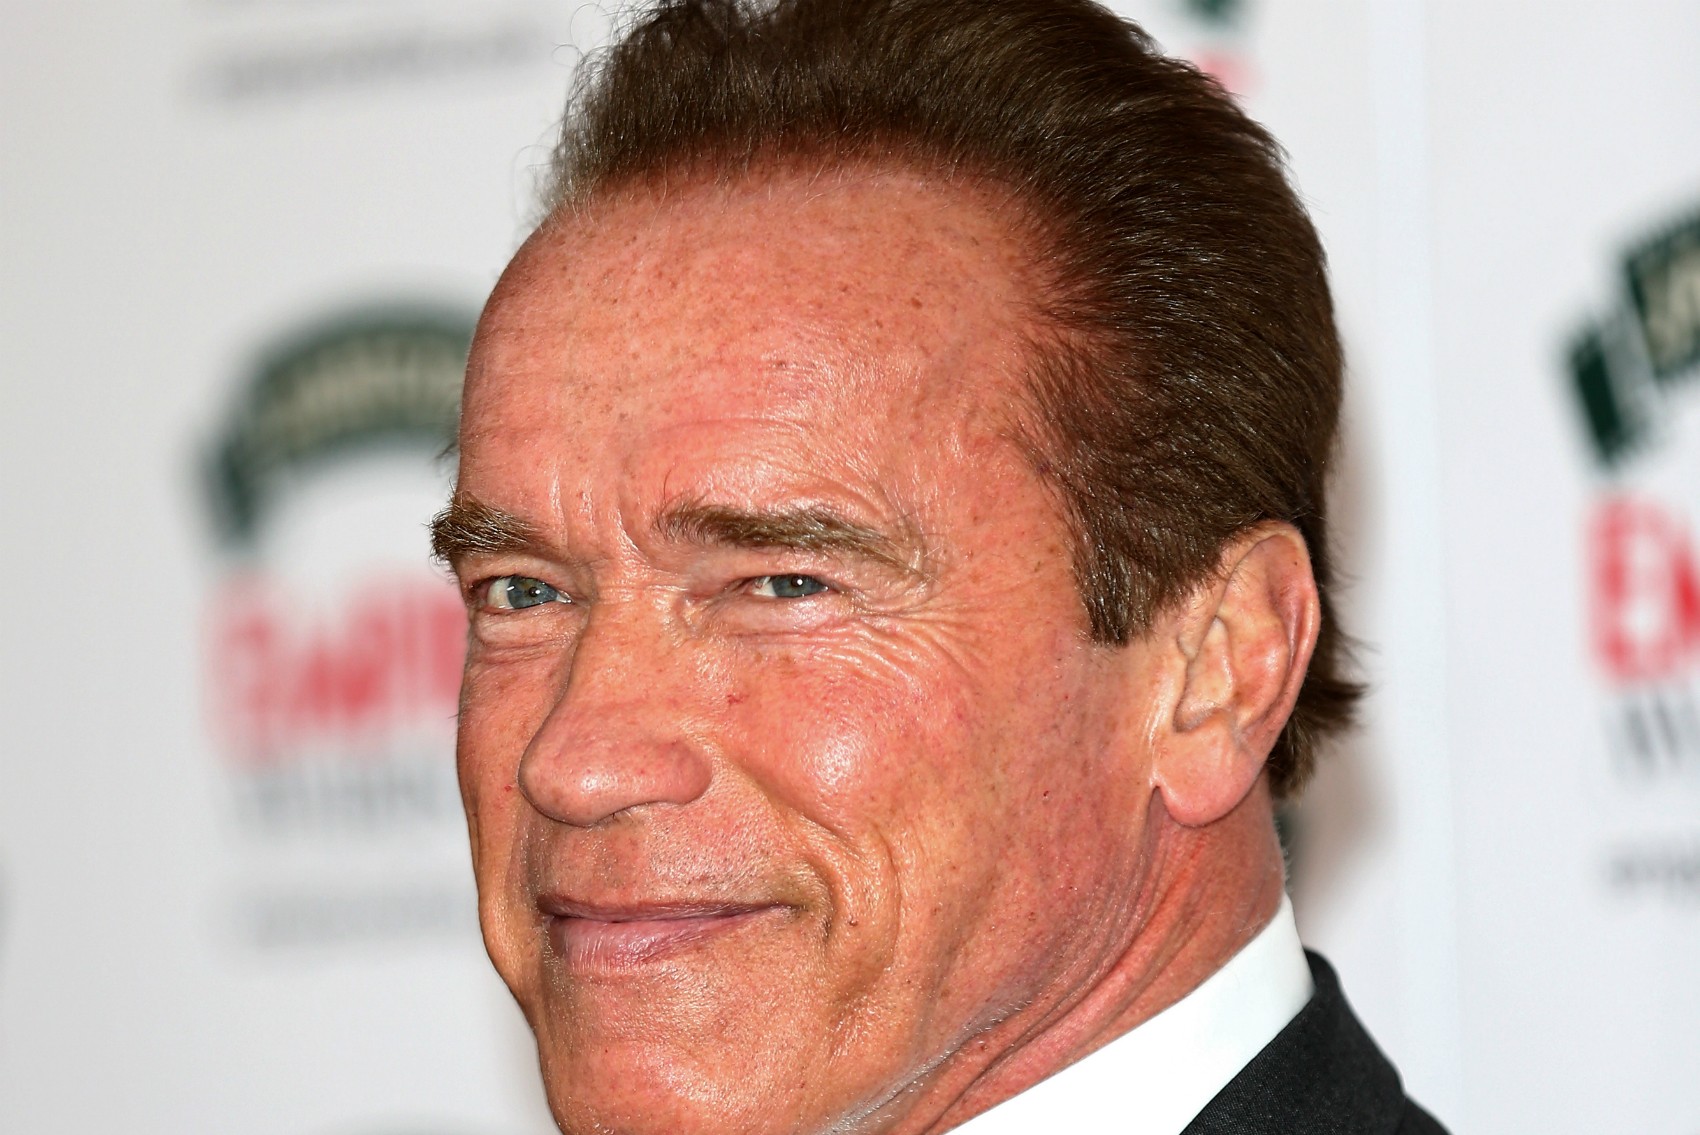 Arnold Schwarzenegger traiu a esposa com a governanta da casa durante mais de uma década. A mulher, Mildred Patricia Baena, chegou a dar à luz um filho dela com o ator em 1997, mas o escândalo só veio à tona em 2011 — resultando em divórcio e desmantelamento da família Schwarzenegger. (Foto: Getty Images)